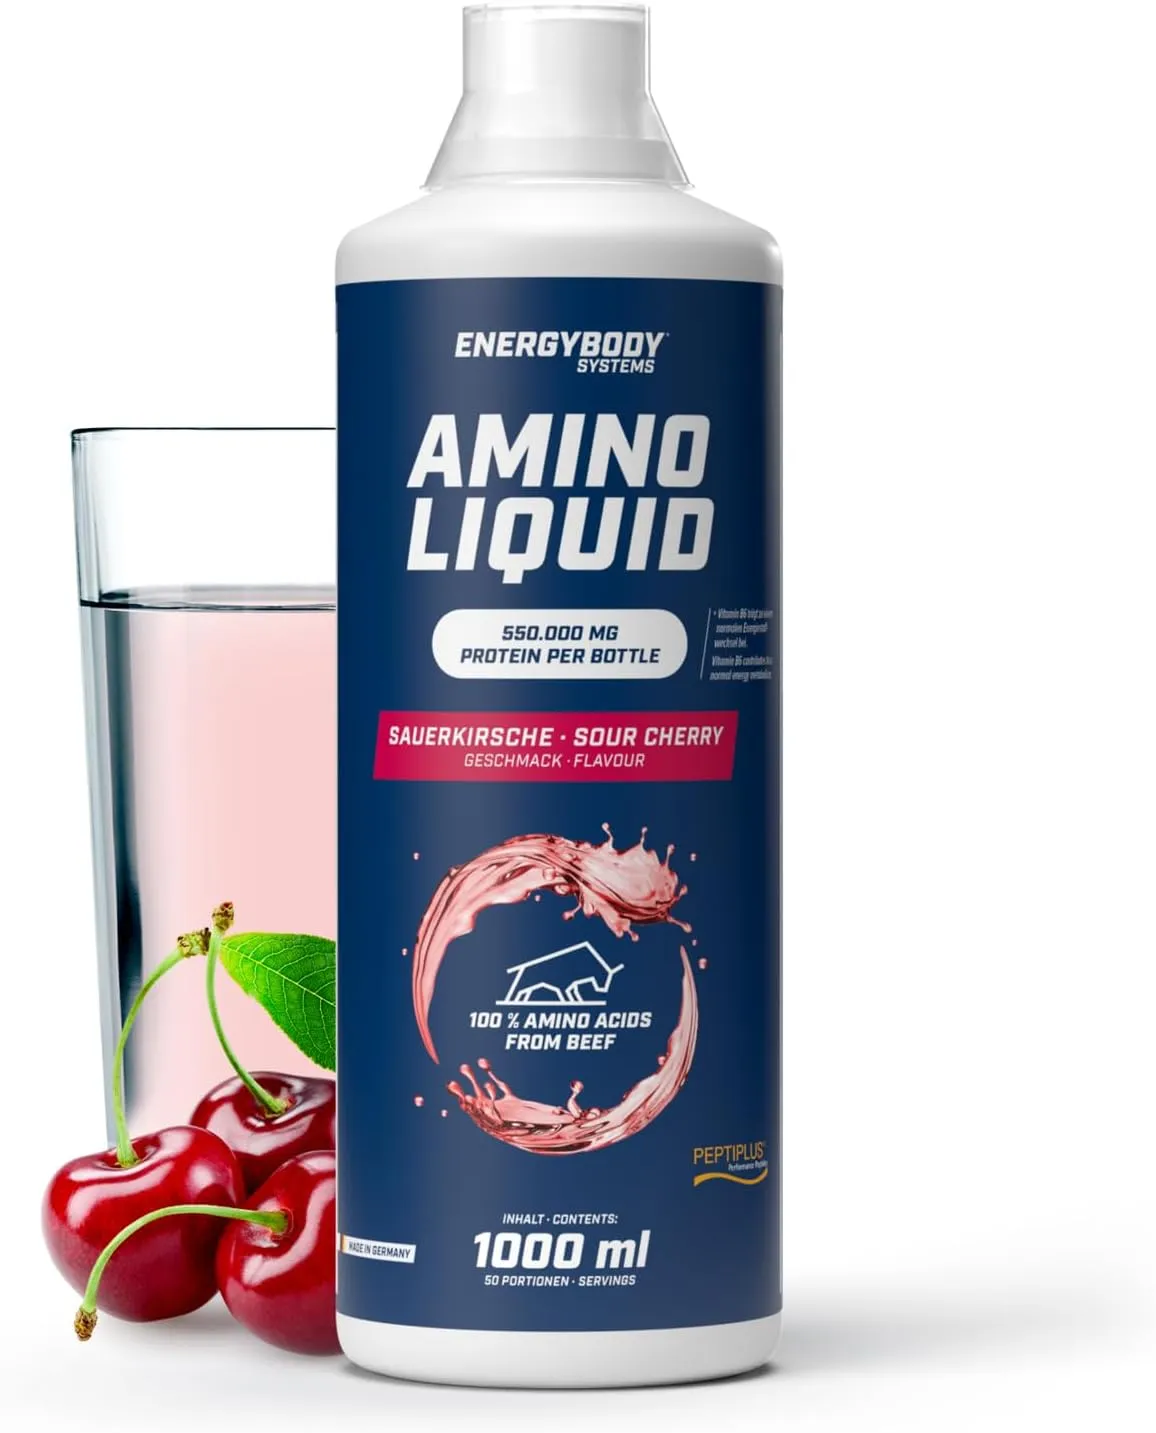 Amino Liquid 550.000 mg